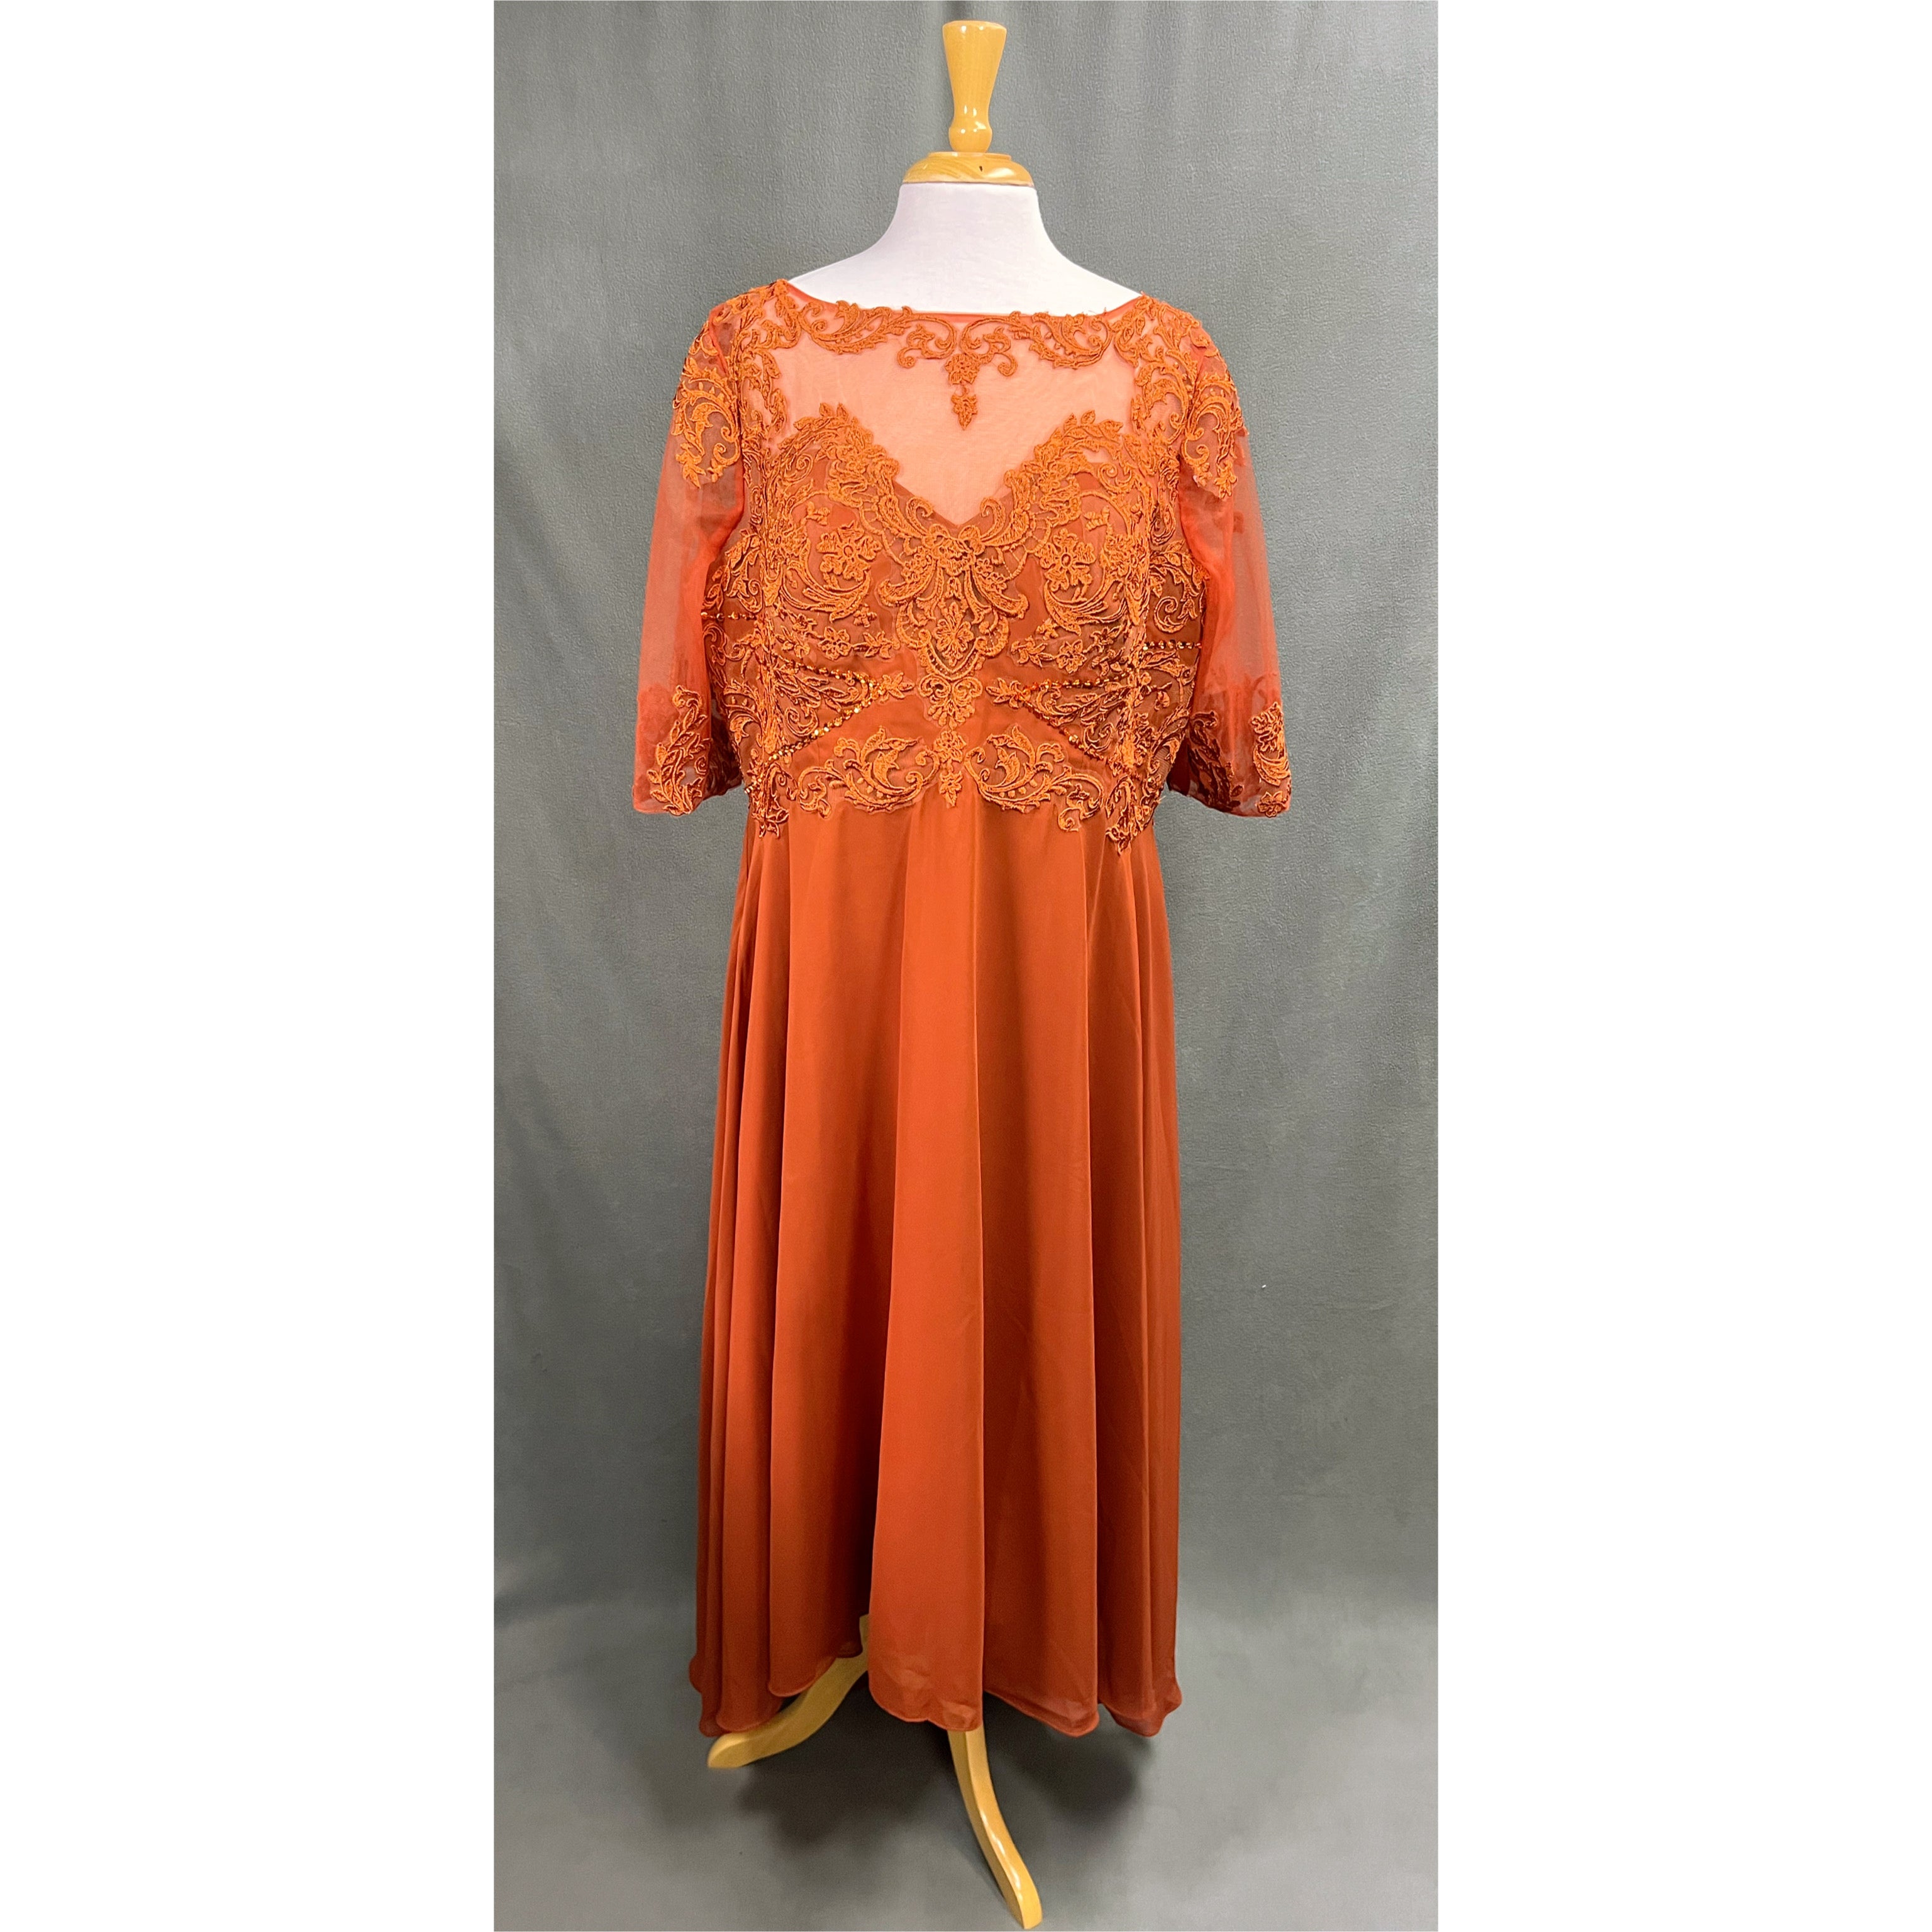 Burnt orange dress, size XXL